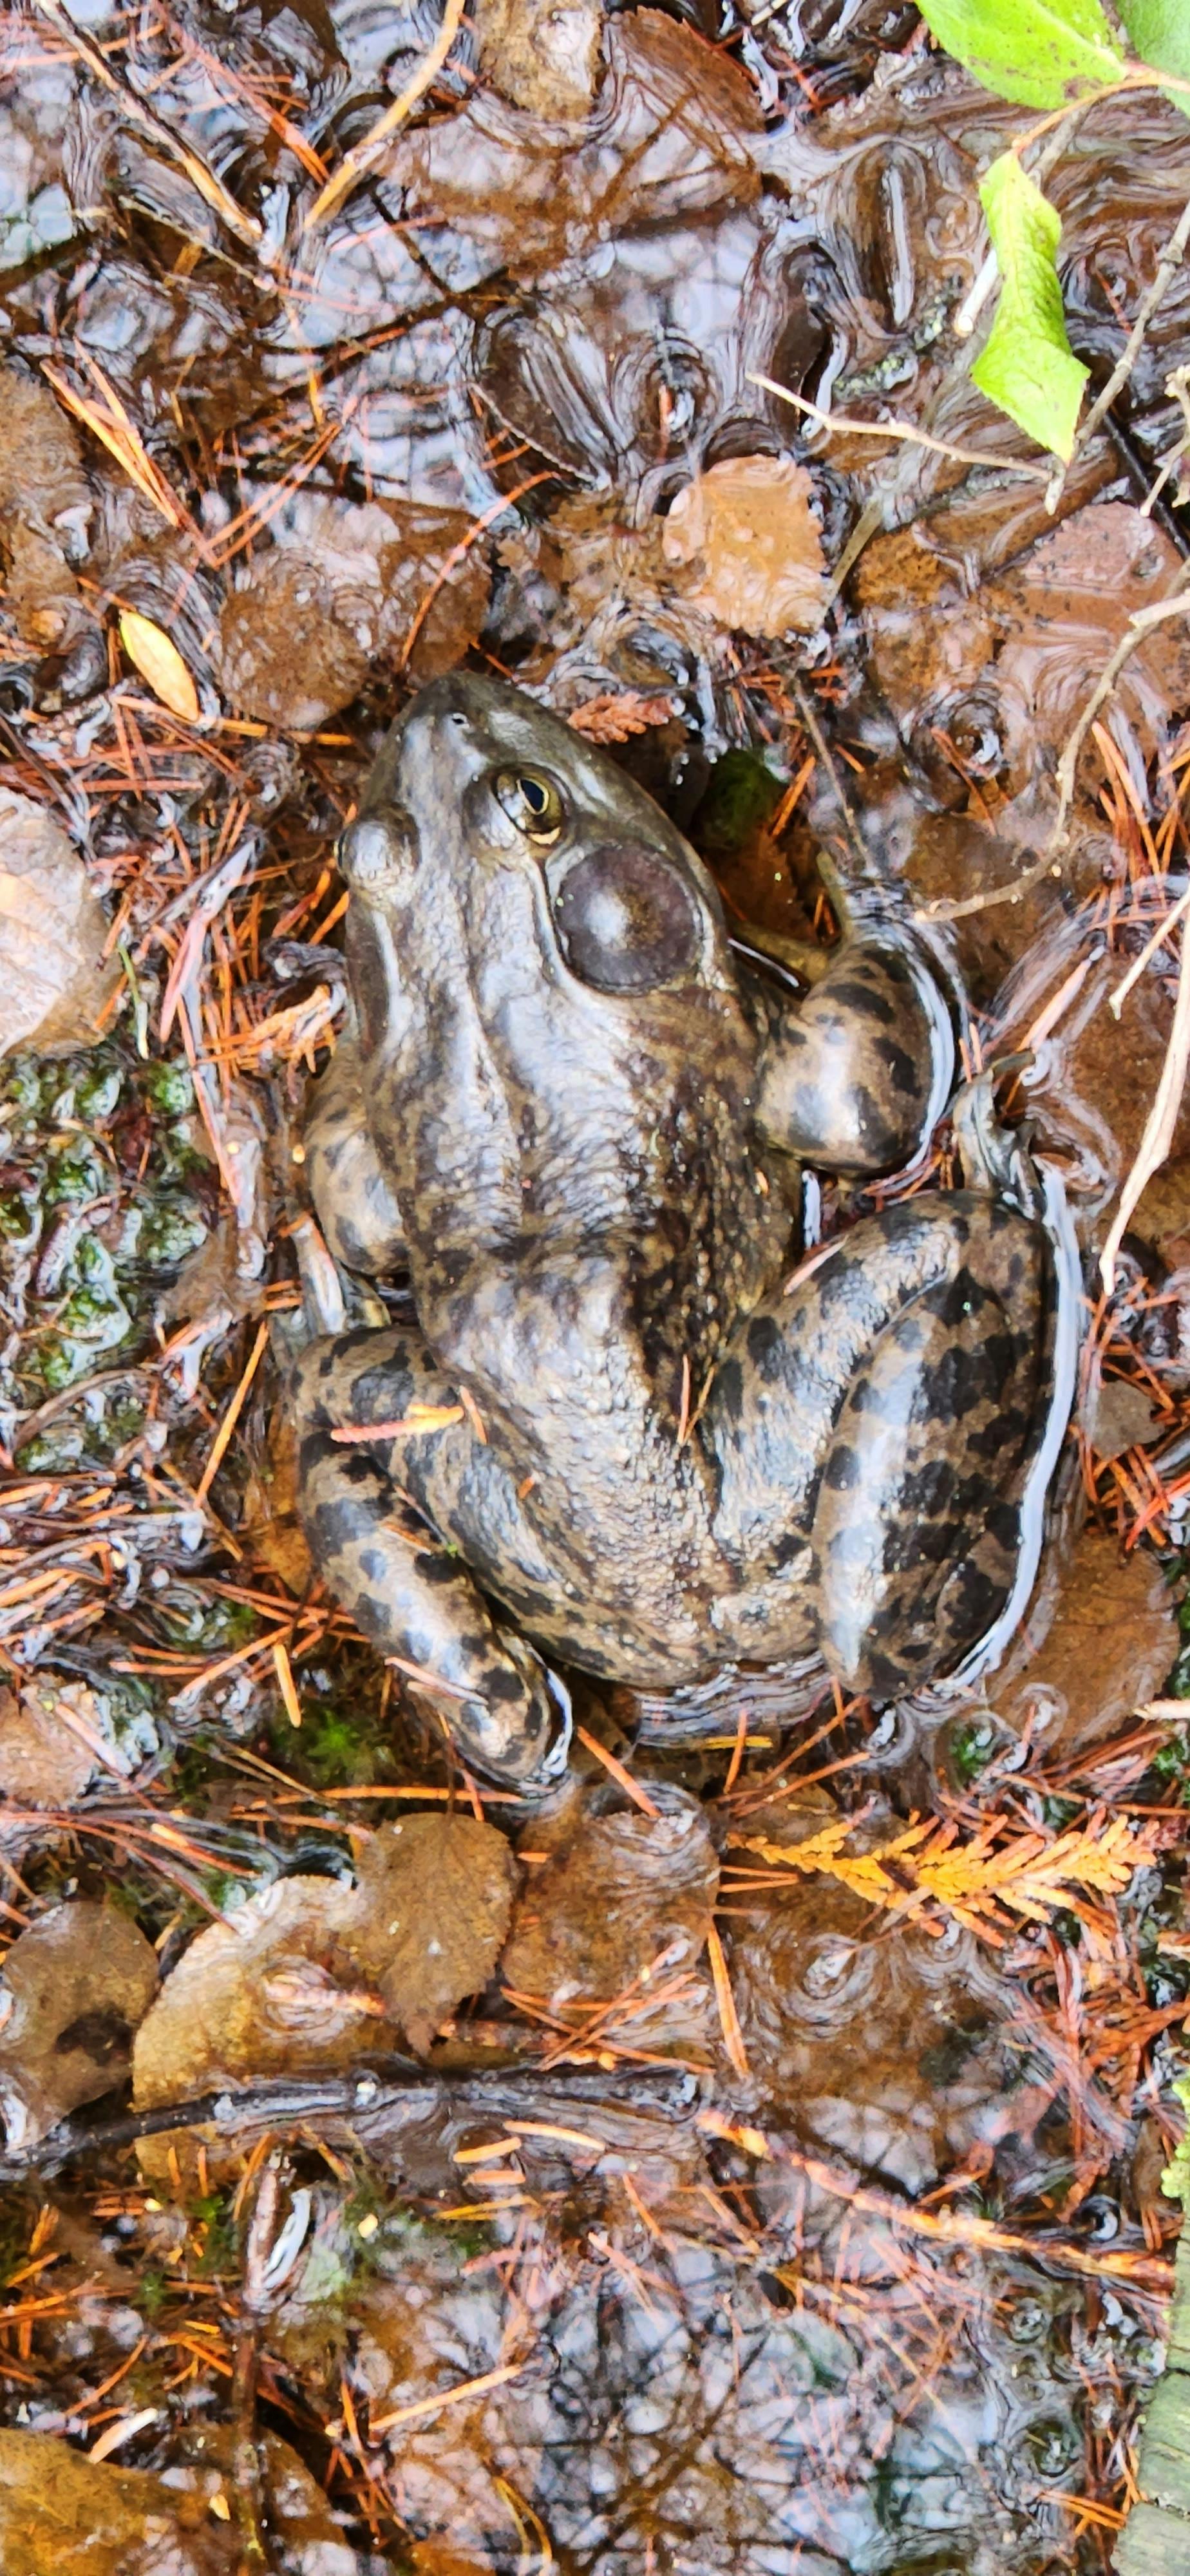 Bullfrog at Burns Bog